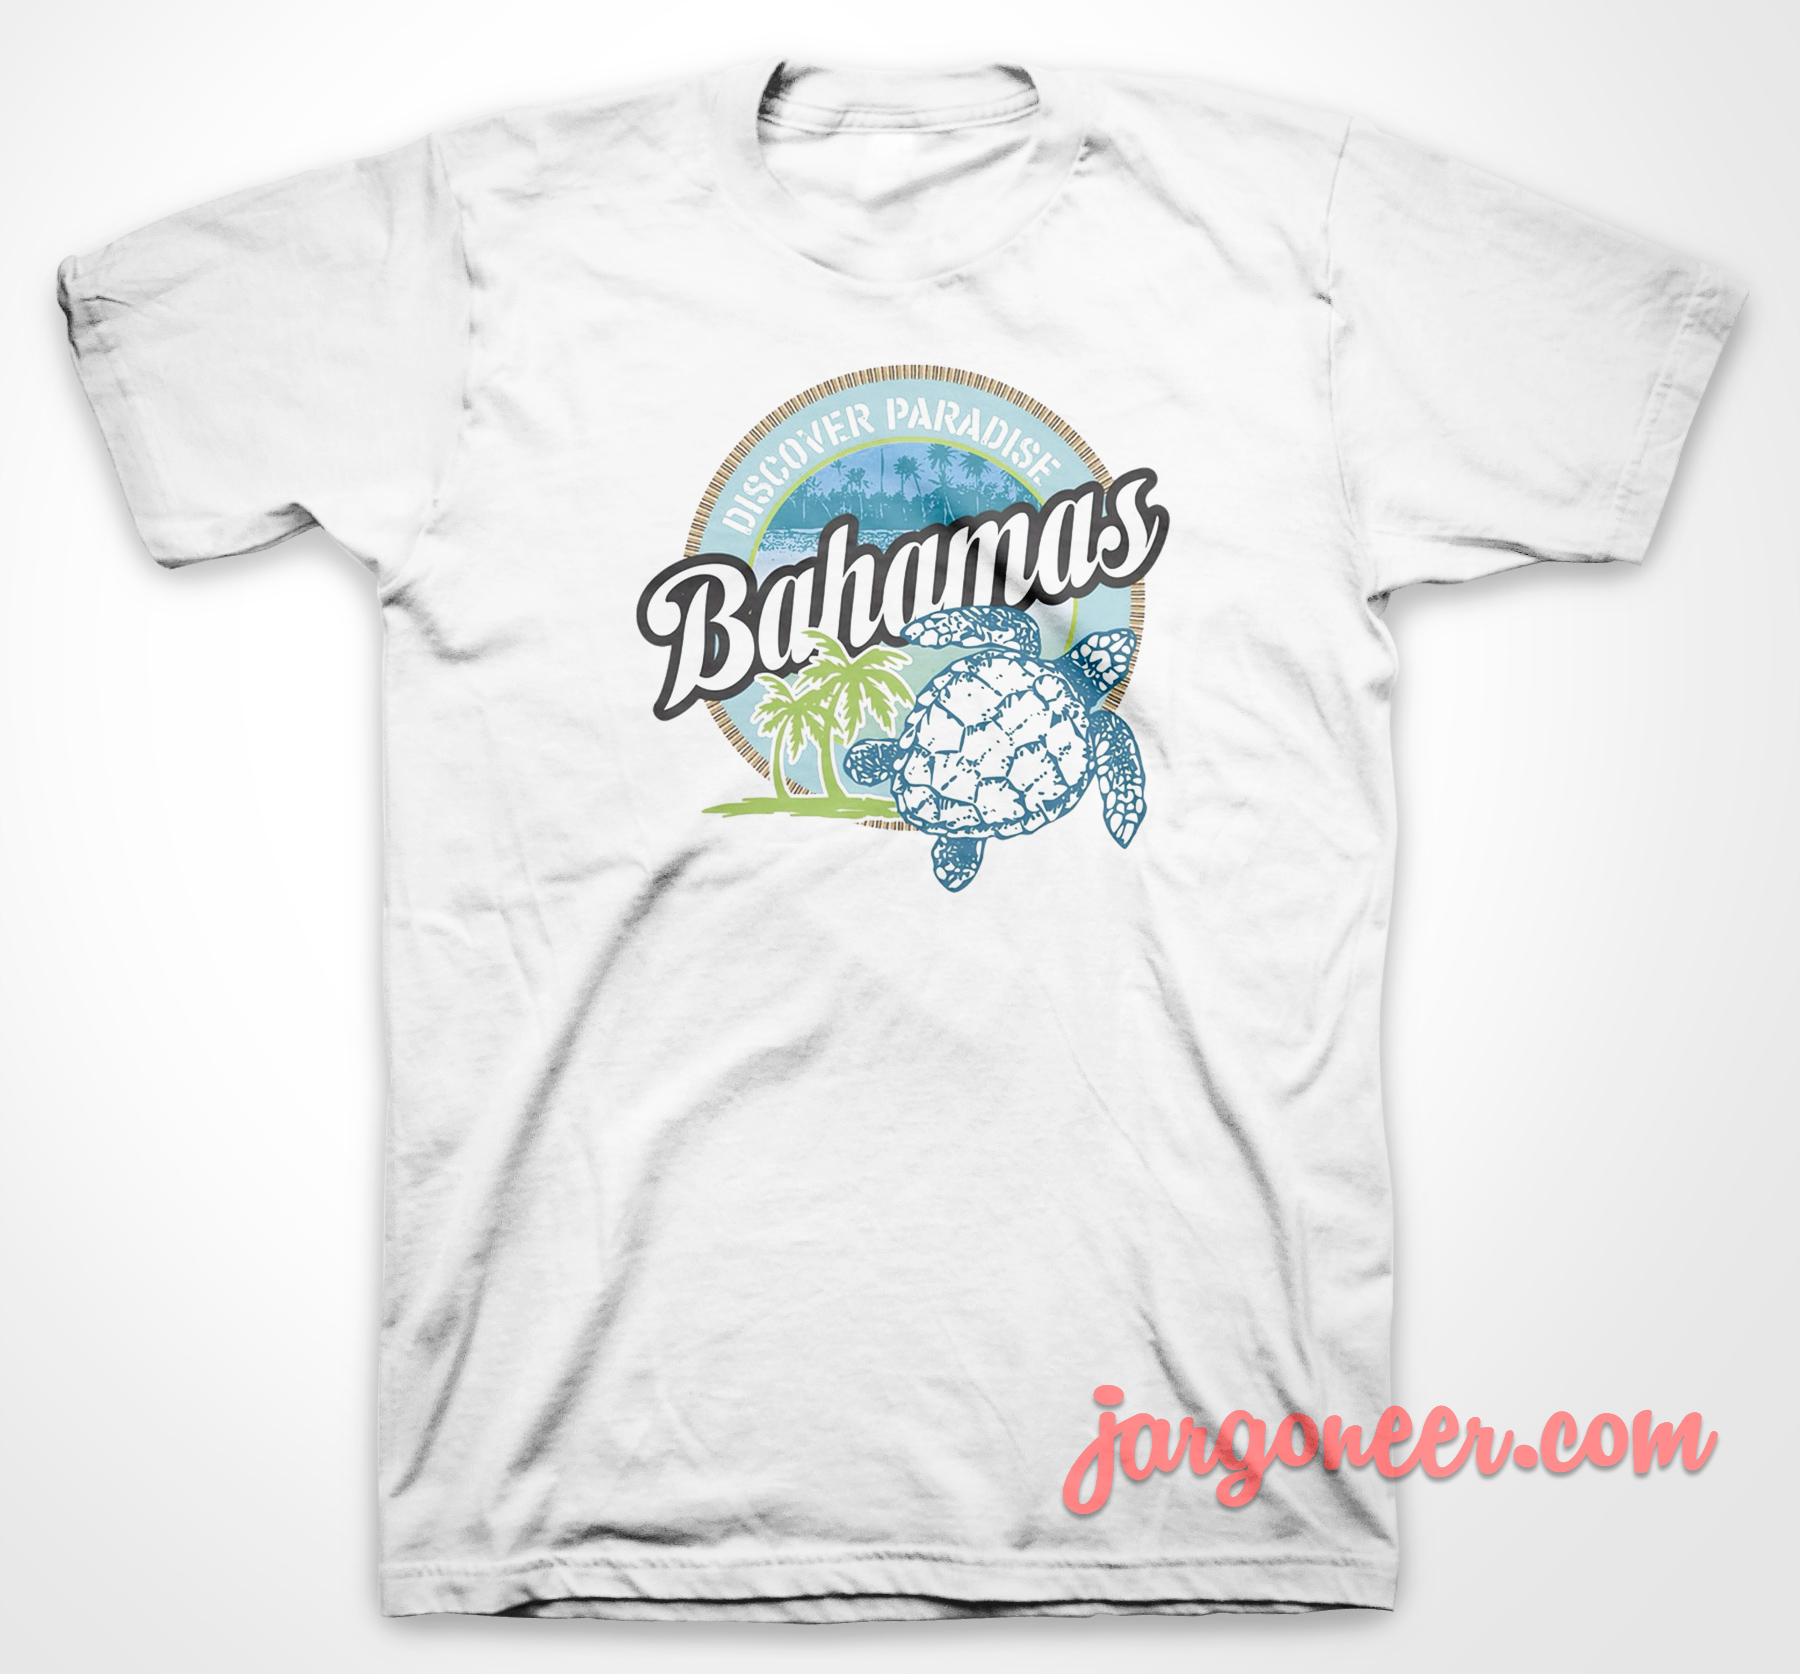 Bahamas Discover Paradise - Shop Unique Graphic Cool Shirt Designs